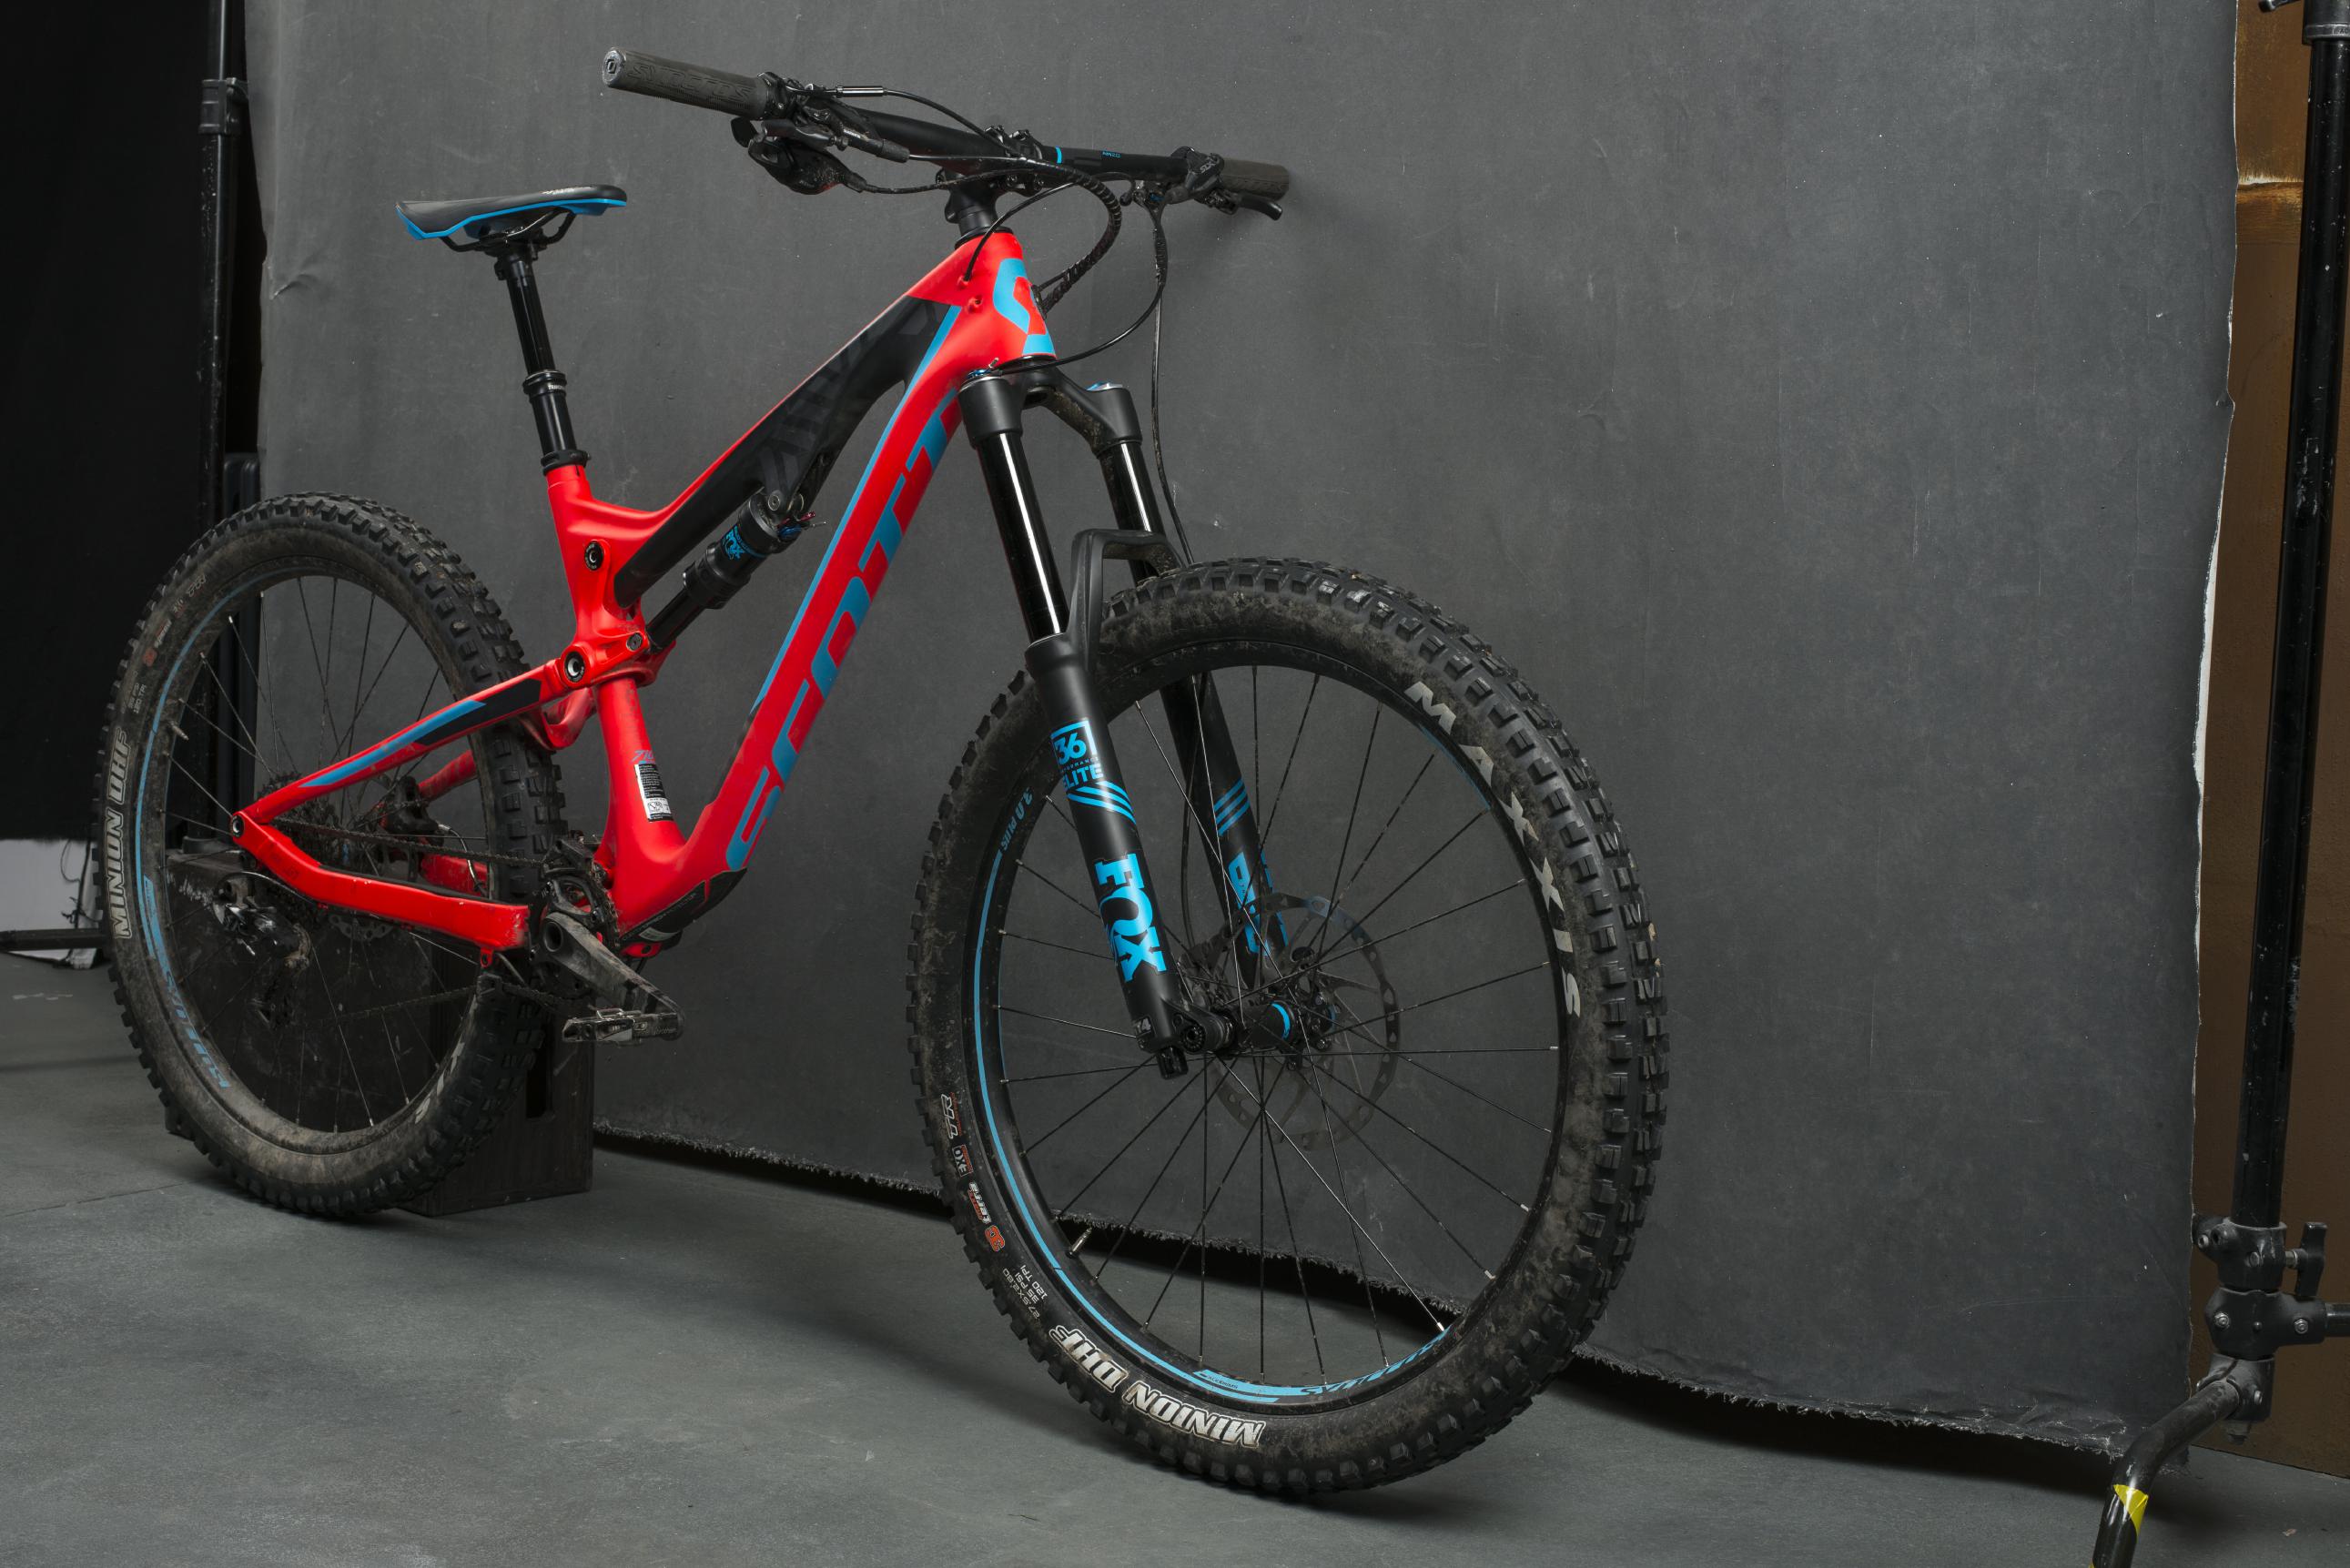 Ganz schön breit: Das Genius LT 710 Plus von Scott gehört einer ganz neuen Gattung von Enduro-Bikes an.